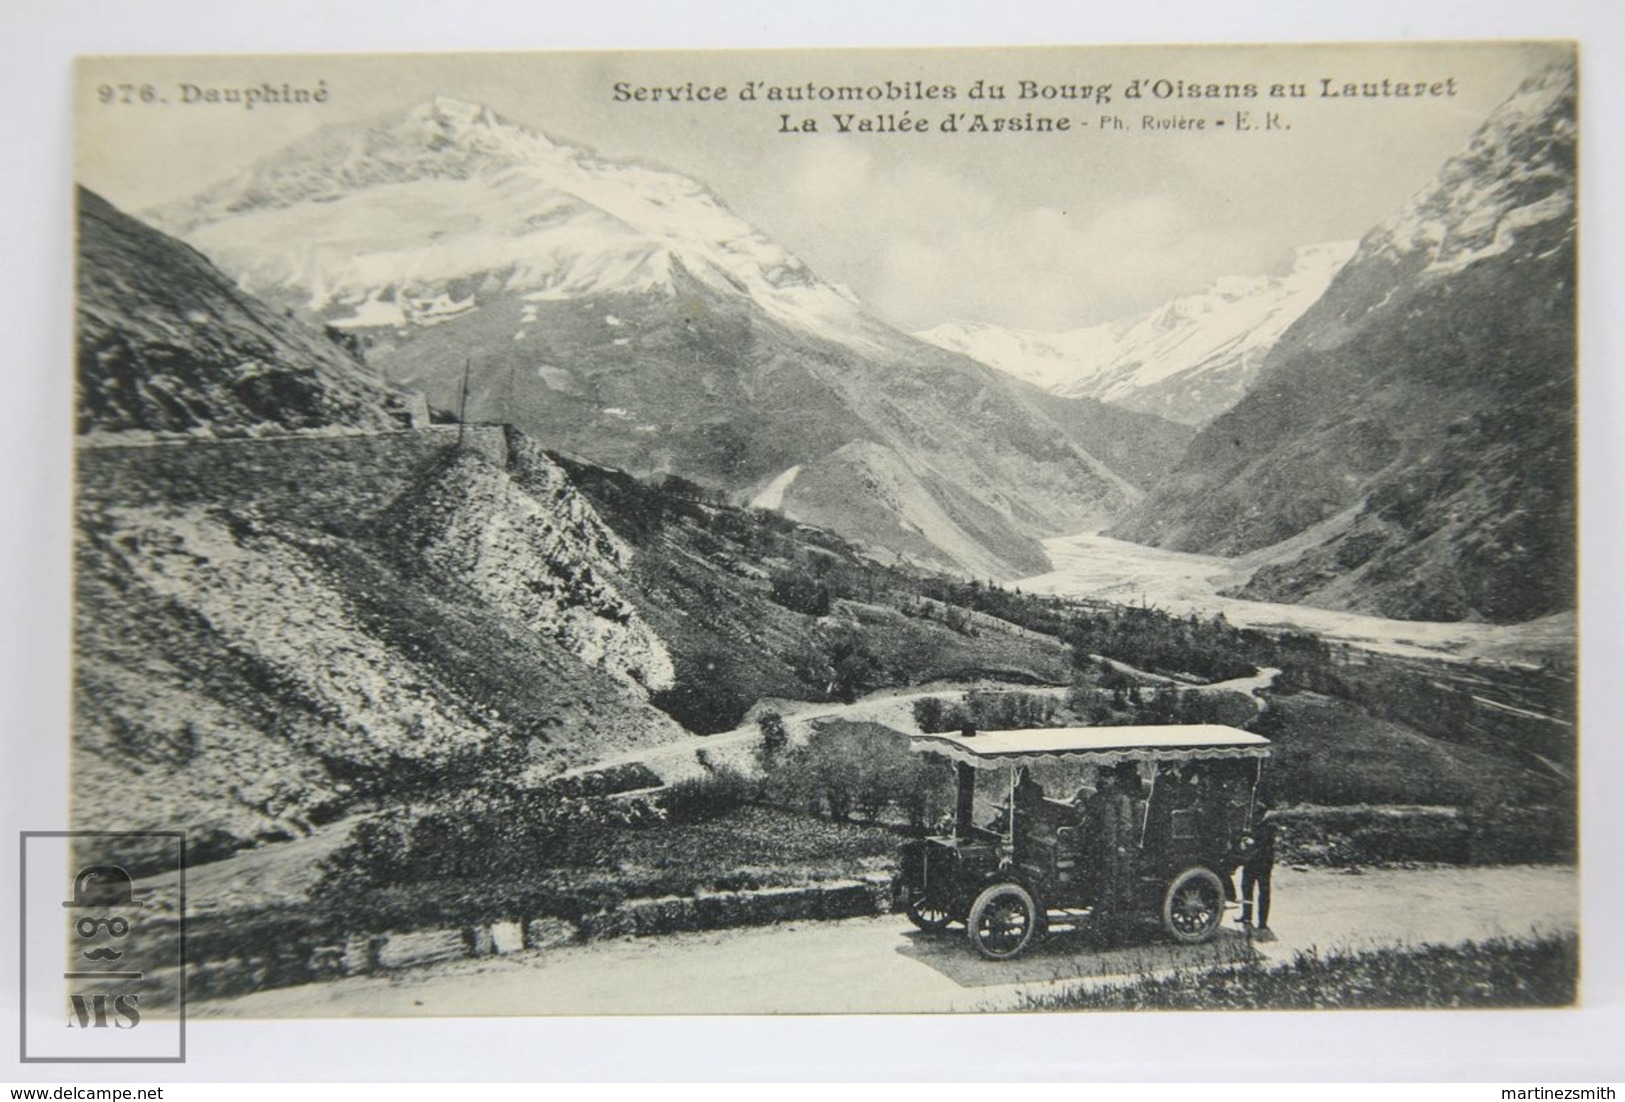 Postcard France - Dauphine - Bus Service - Service Automobiles Bourg D'Oisans Au Lautaret - Valle Arsine - Rivière E.R. - Grenoble